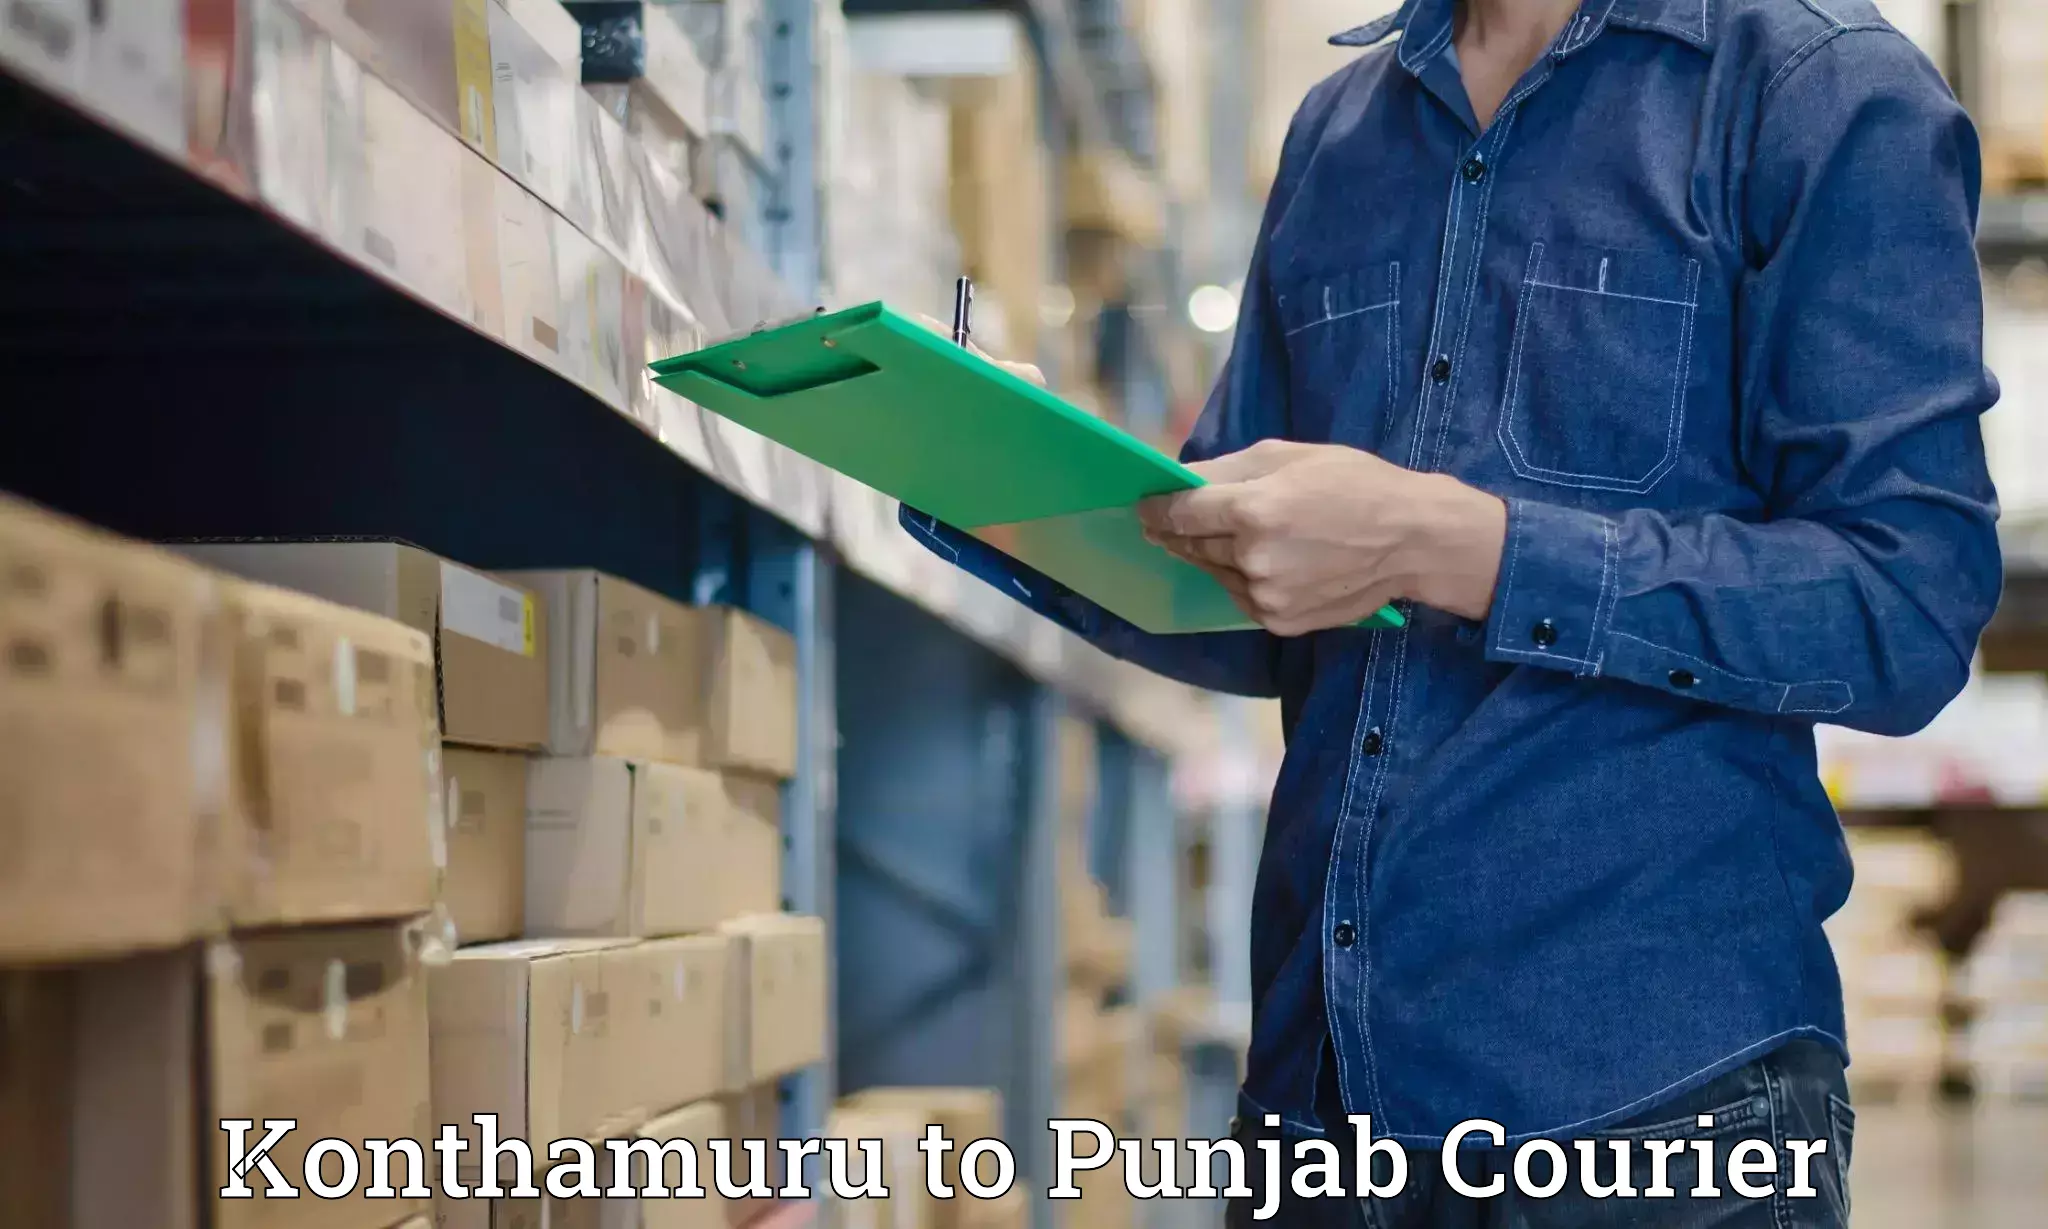 E-commerce shipping Konthamuru to Central University of Punjab Bathinda